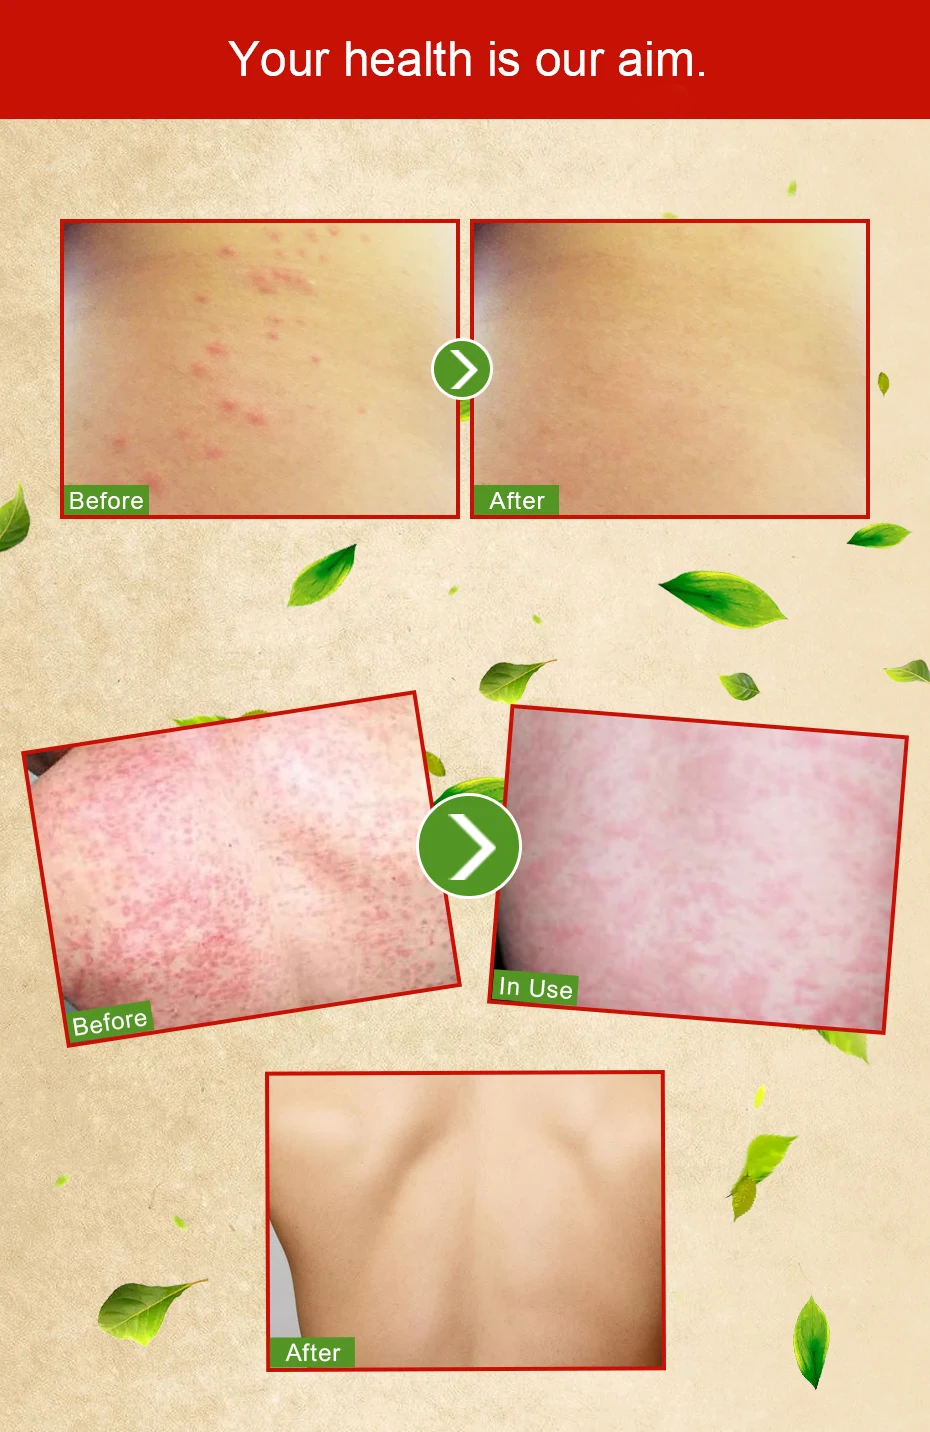 Yandaifu псориаз, дерматит и экзема зуд псориаз проблемы с кожей кремы уход за кожей штукатурка псориаз крем